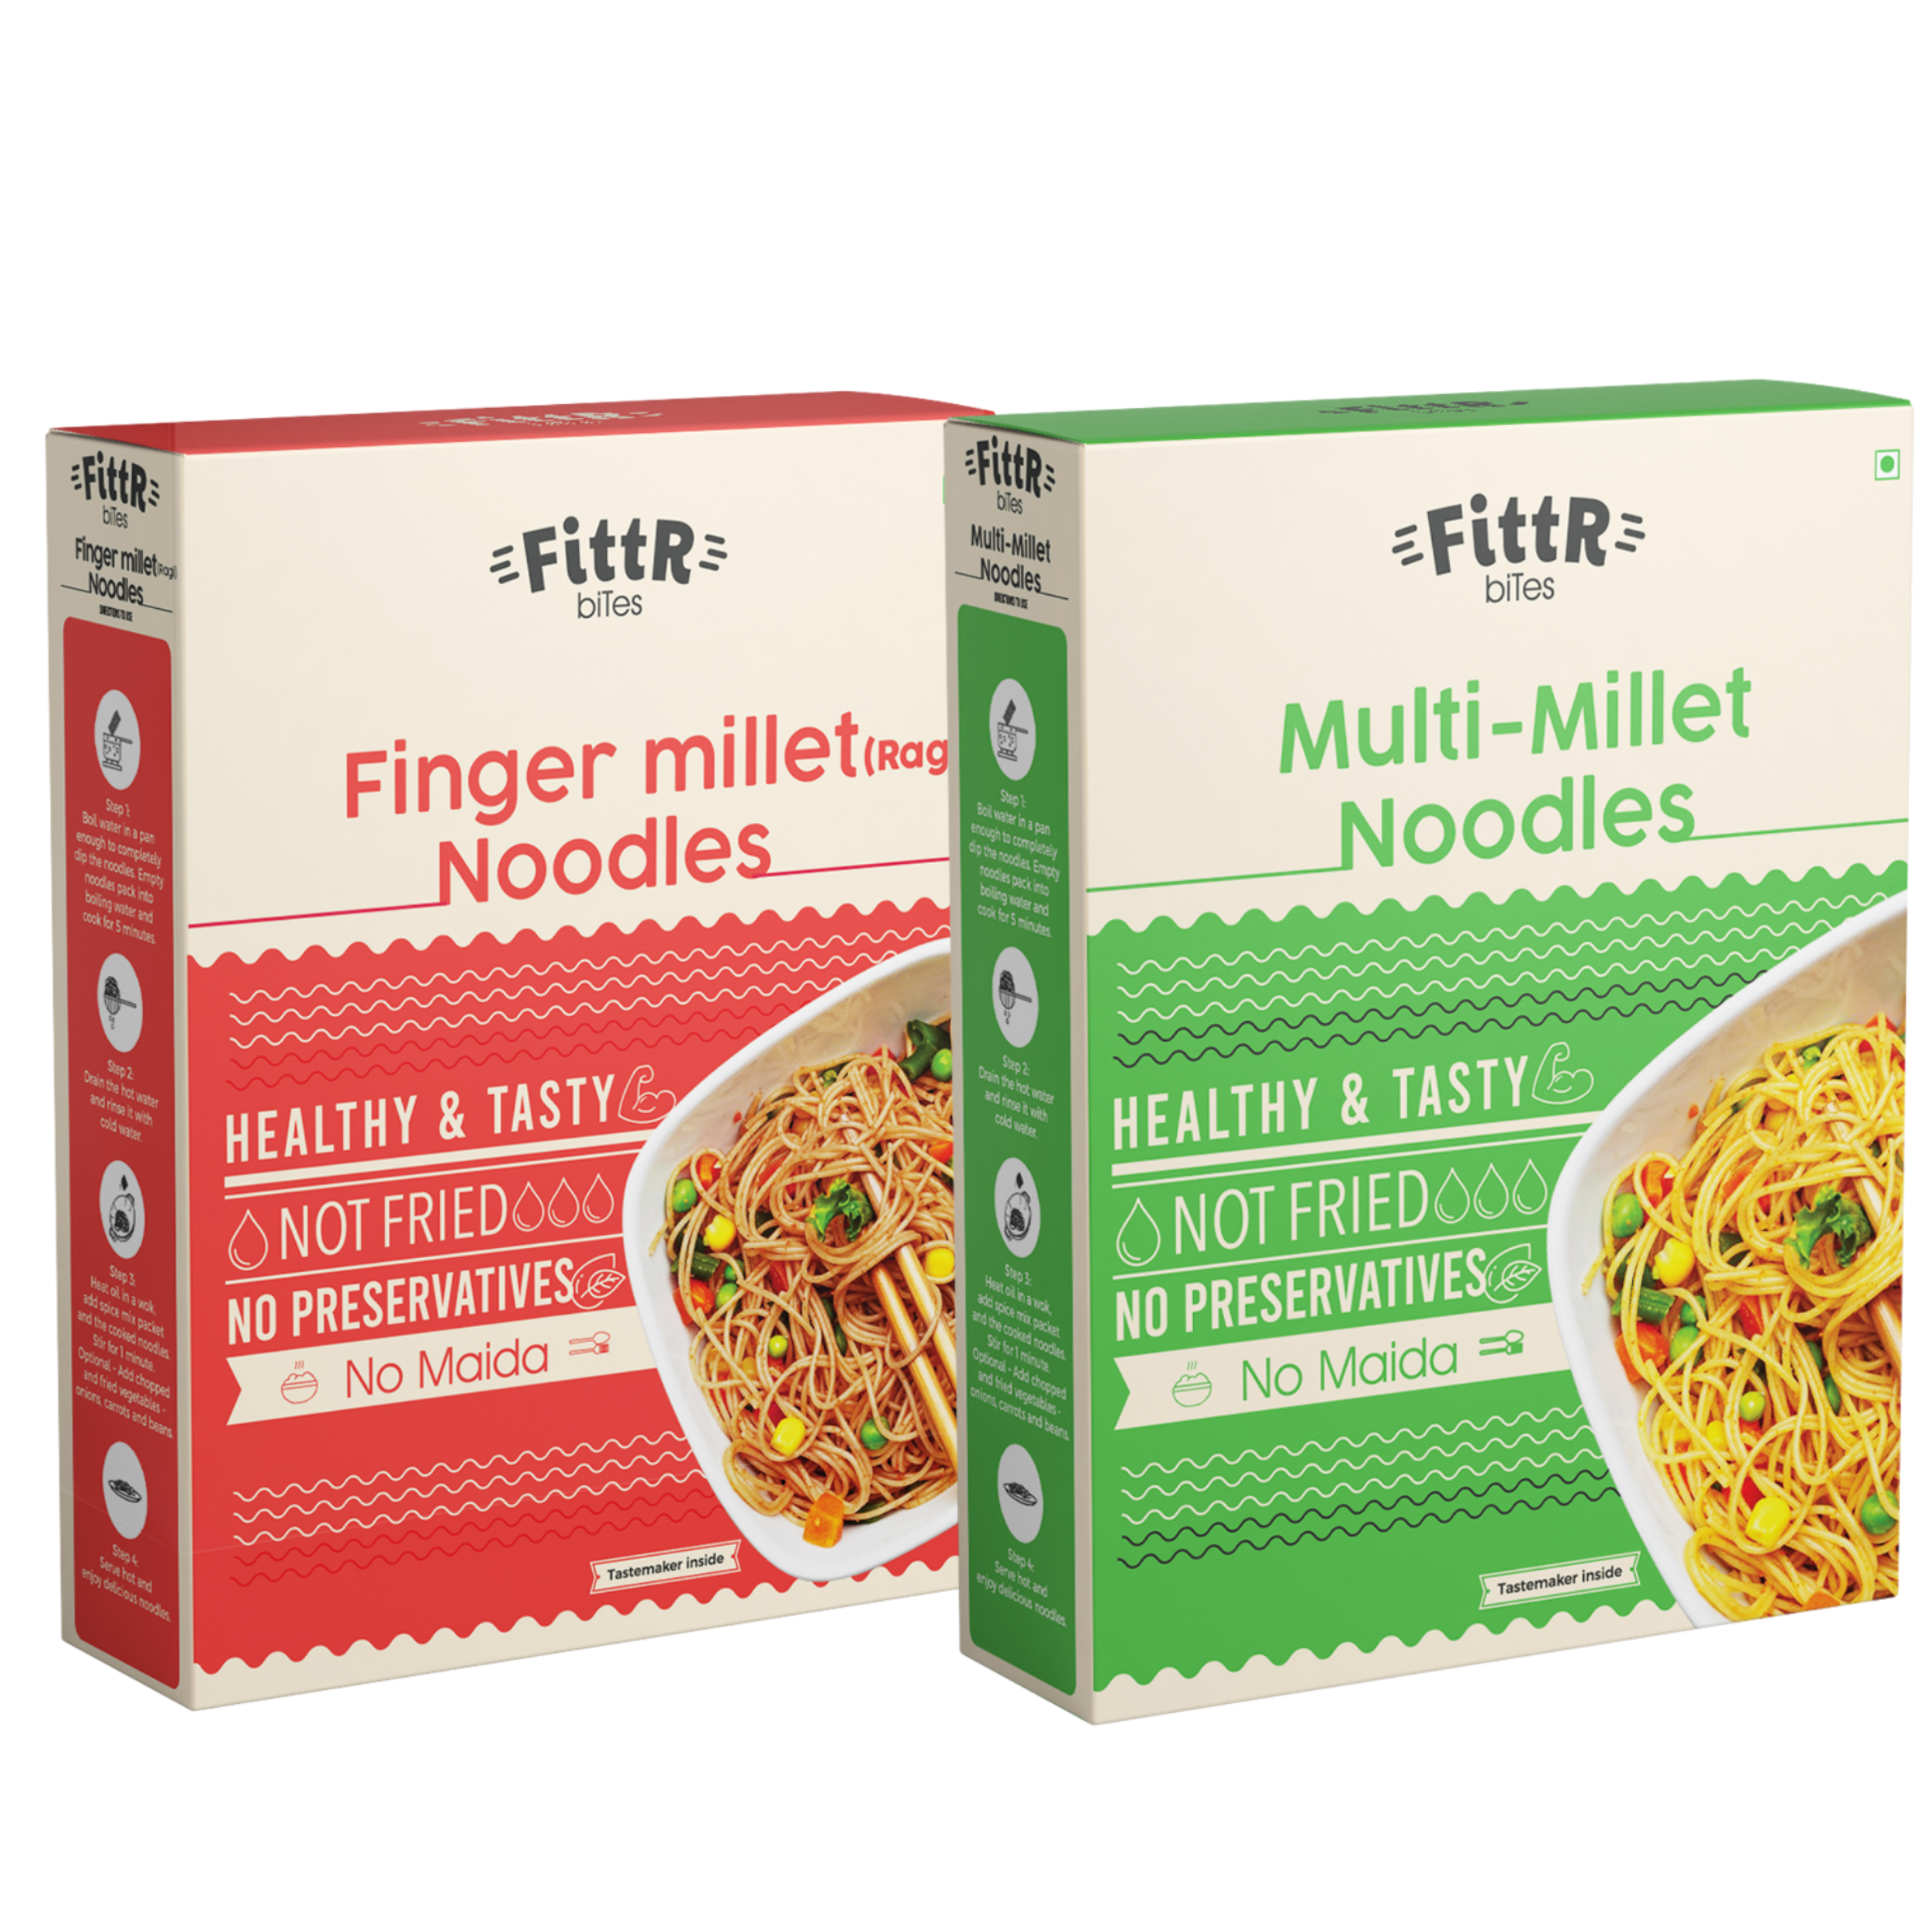 Multi Millets Noodles & Finger Millets (Ragi) Noodles Combo | Pack of 2 | 192g Each